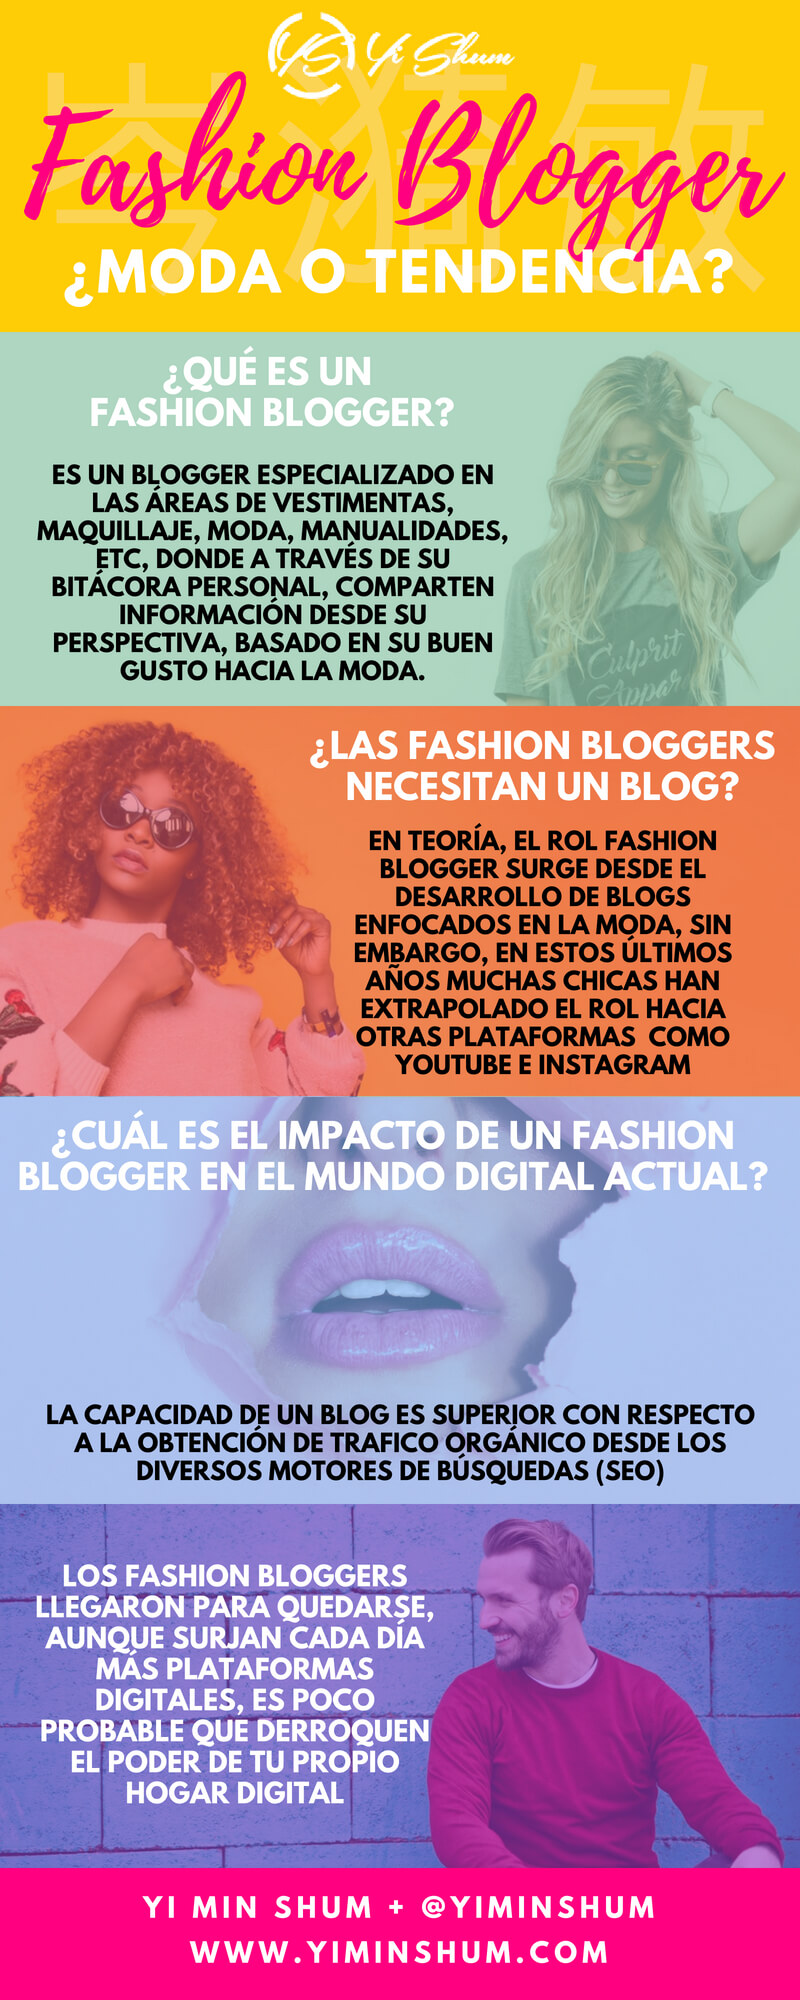 Fashion Blogger Moda o Tendencia - infografía